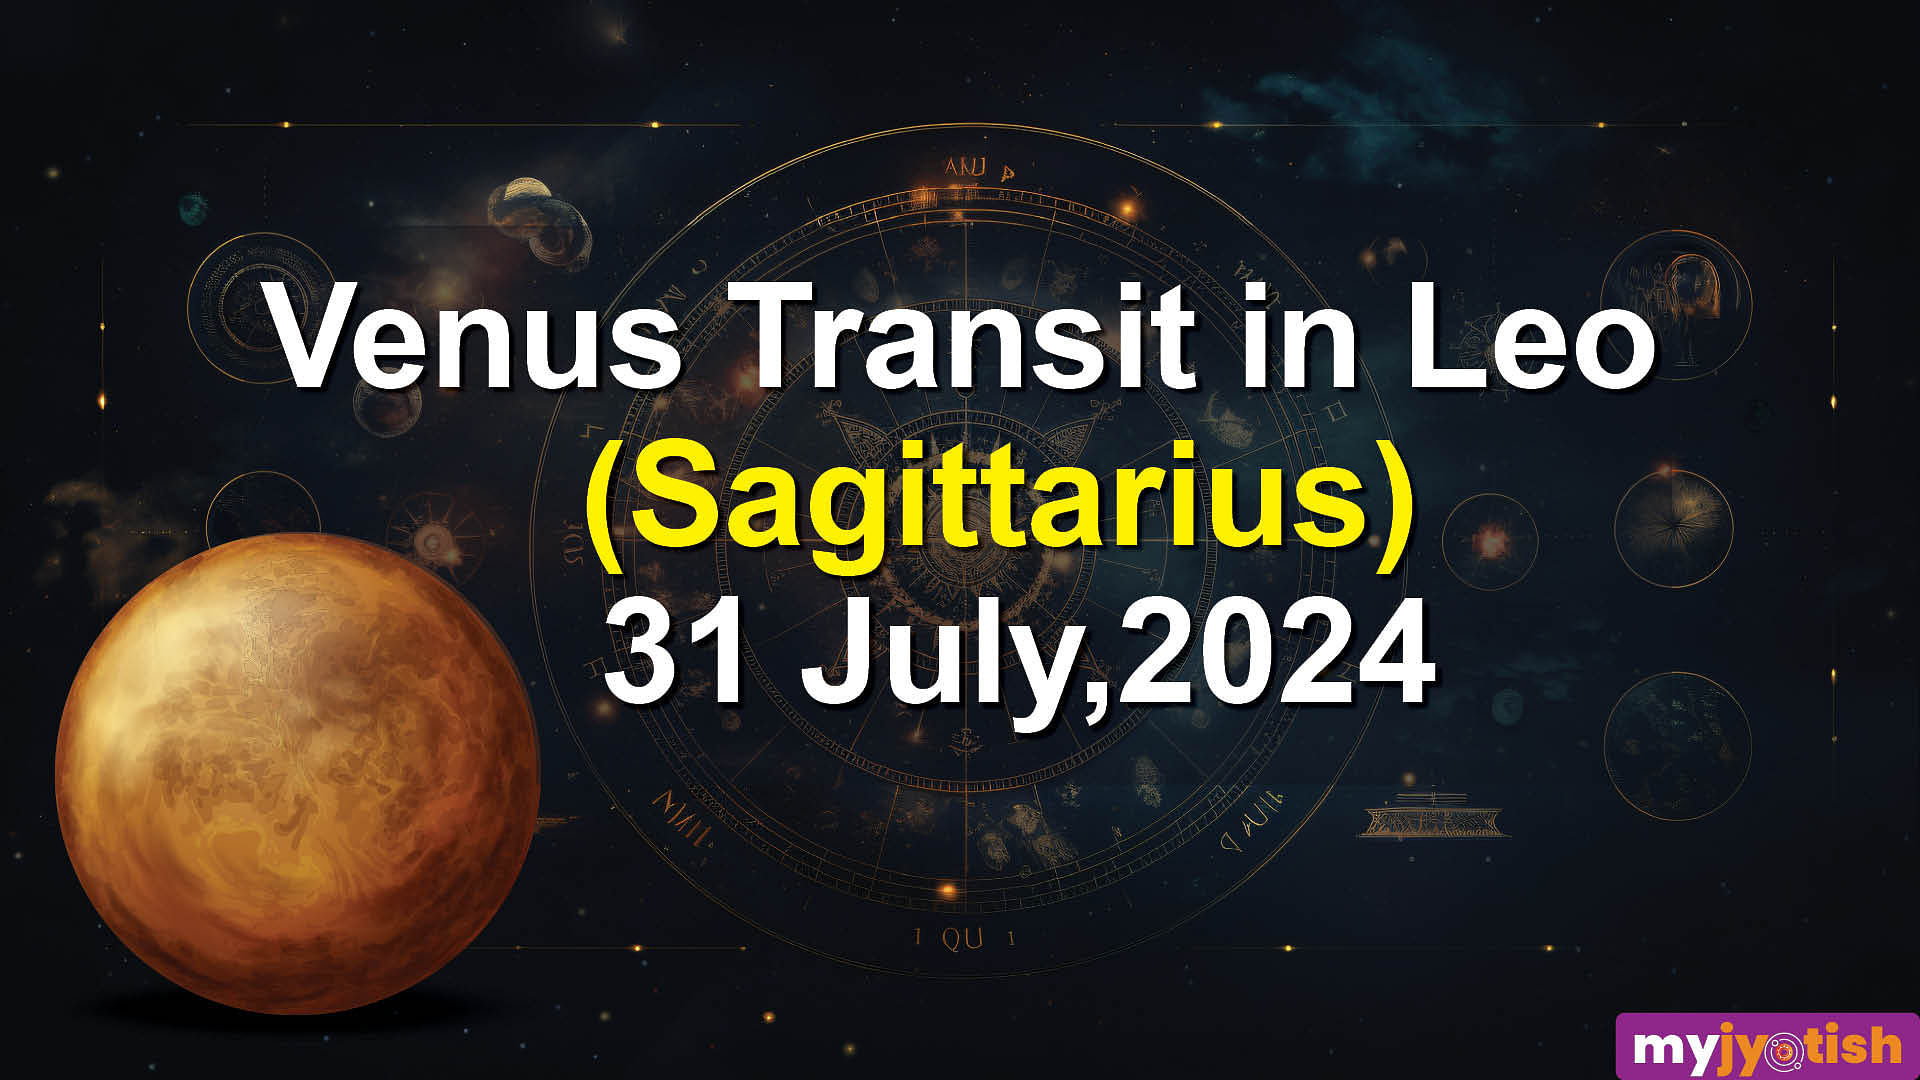 Venus transit in Leo